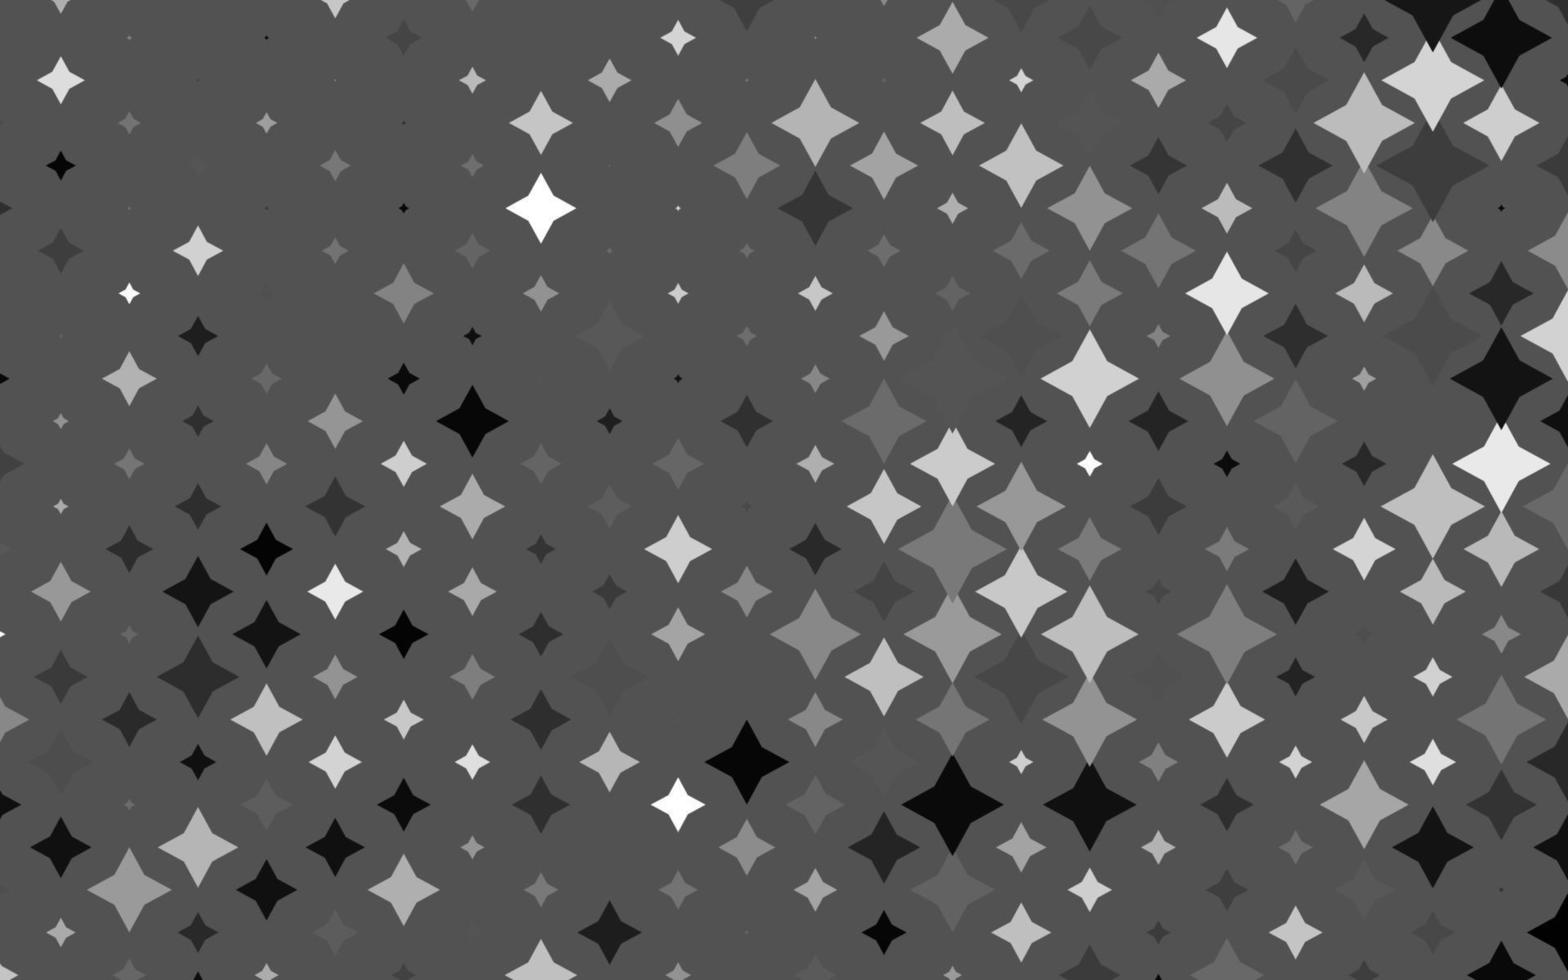 hellsilberne, graue Vektortextur mit schönen Sternen. vektor